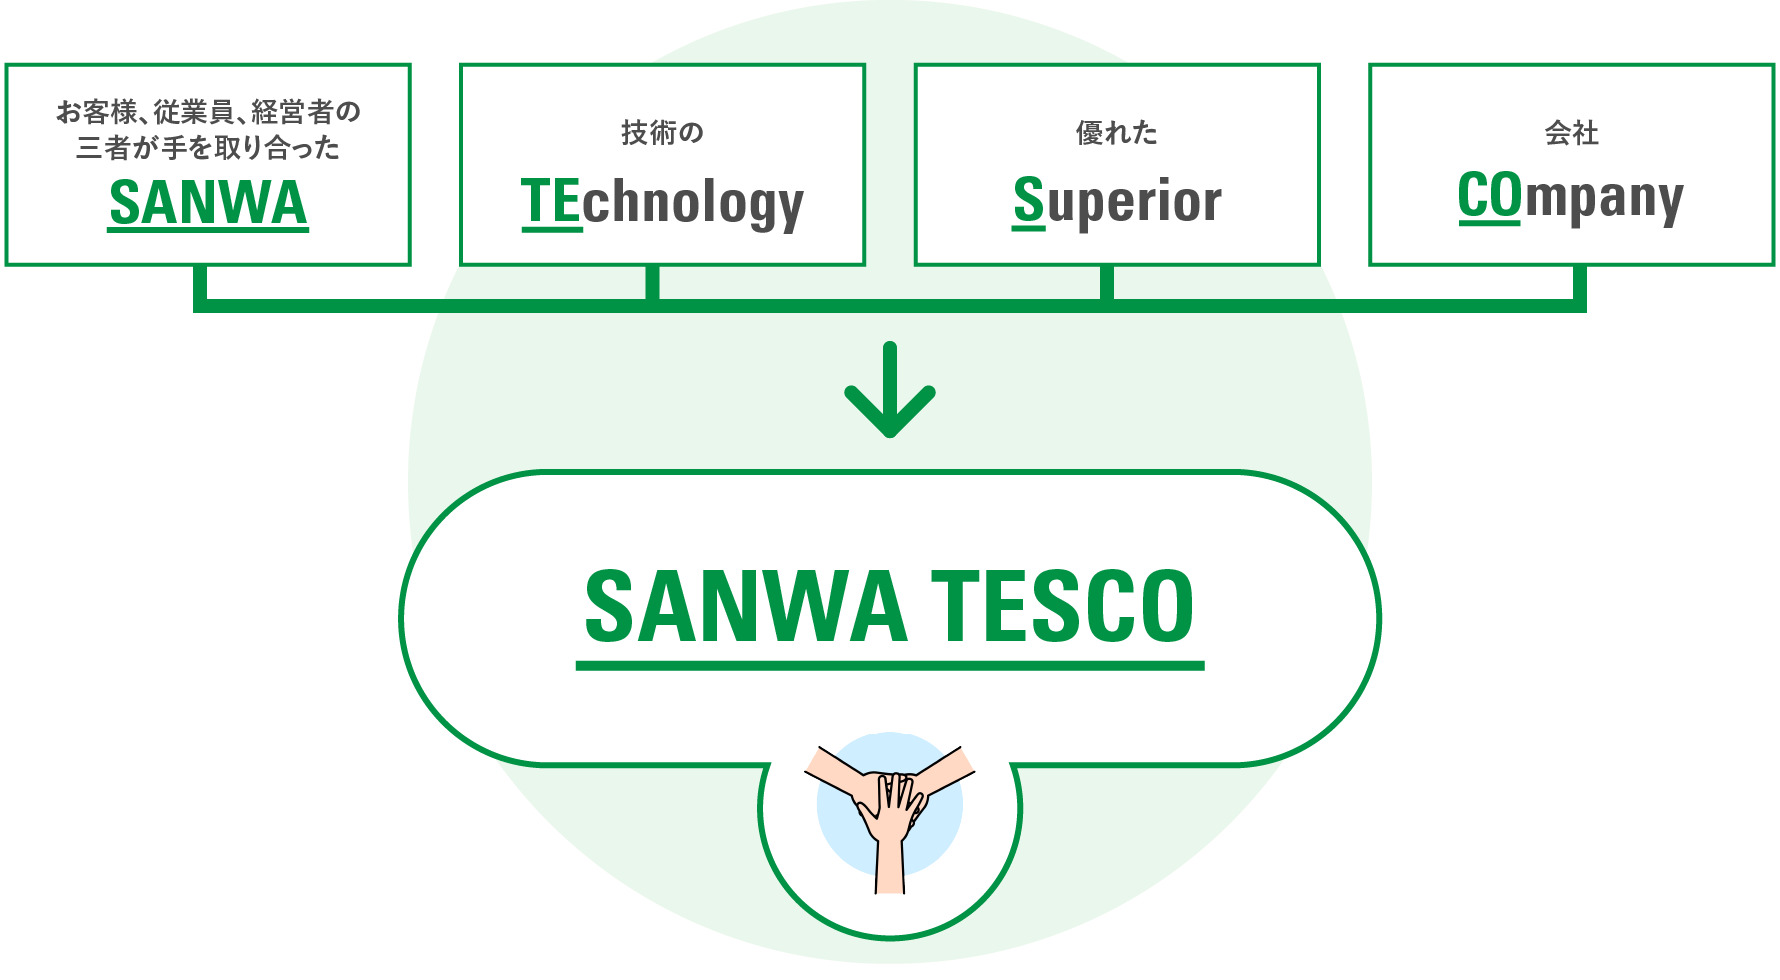 SANWA TESCO